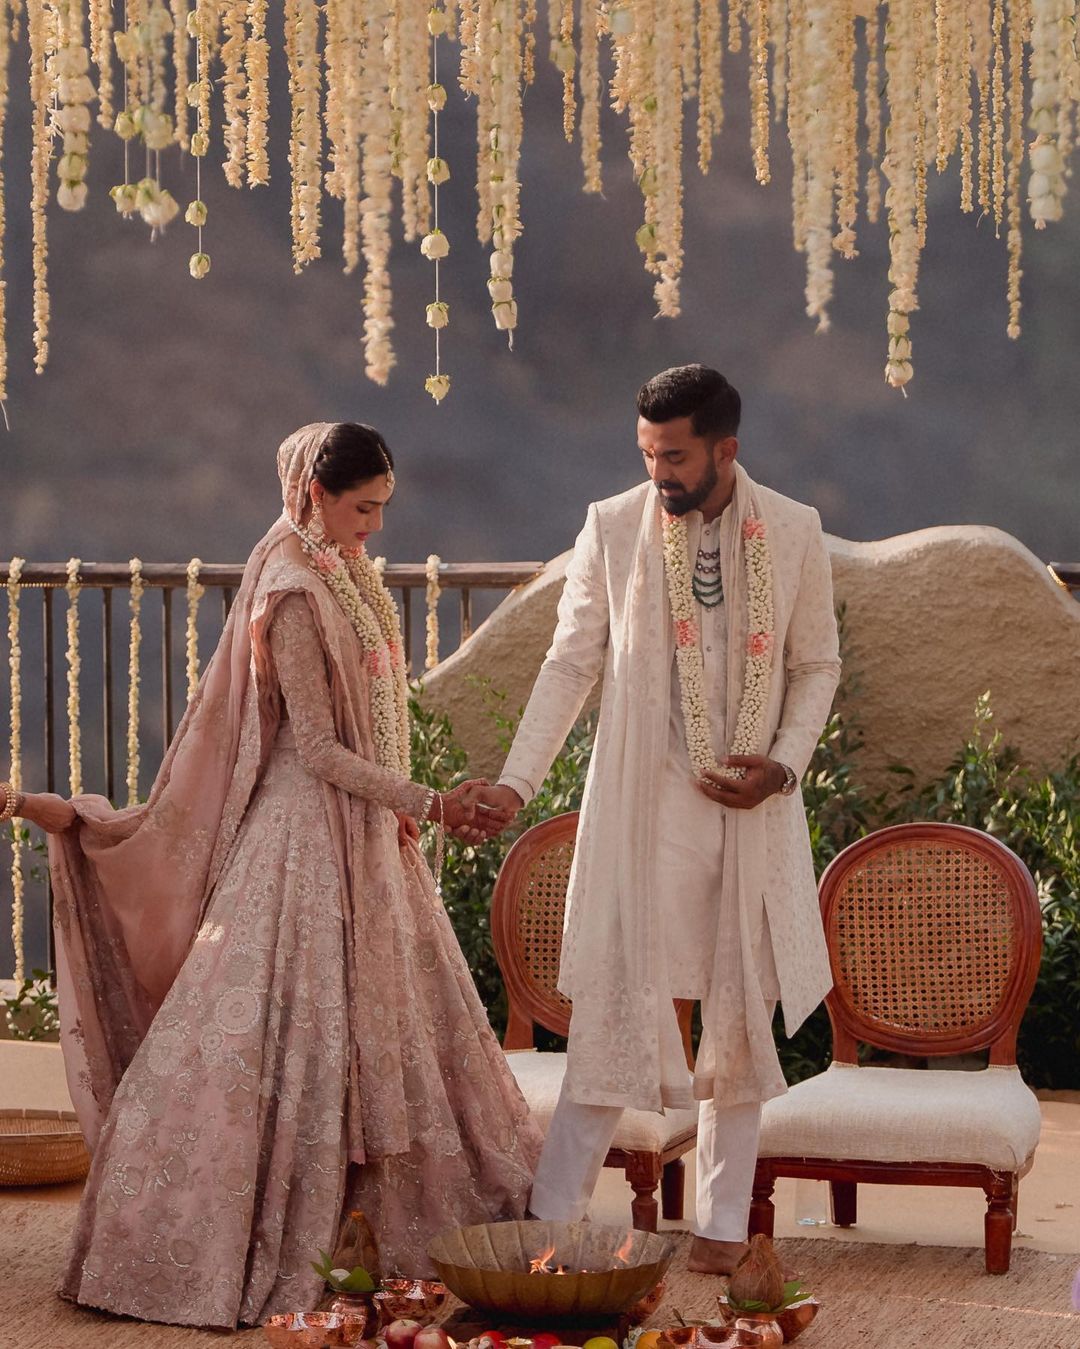  अथिया और केएल राहुल ने सुनील शेट्टी के खंडाला स्थित बंगले में साथ फेरे लिए. बंगले को खूबसूरत तरीके से सजाया गया था. वीकेंड पर मेहंदी, हल्दी और संगीत सेरेमनी के साथ कपल की शादी का जश्न शुरू हुआ था और आज 23 जनवरी को कपल ने 7 फेरे ले लिए. (फोटो साभार: Instagram@athiyashetty)